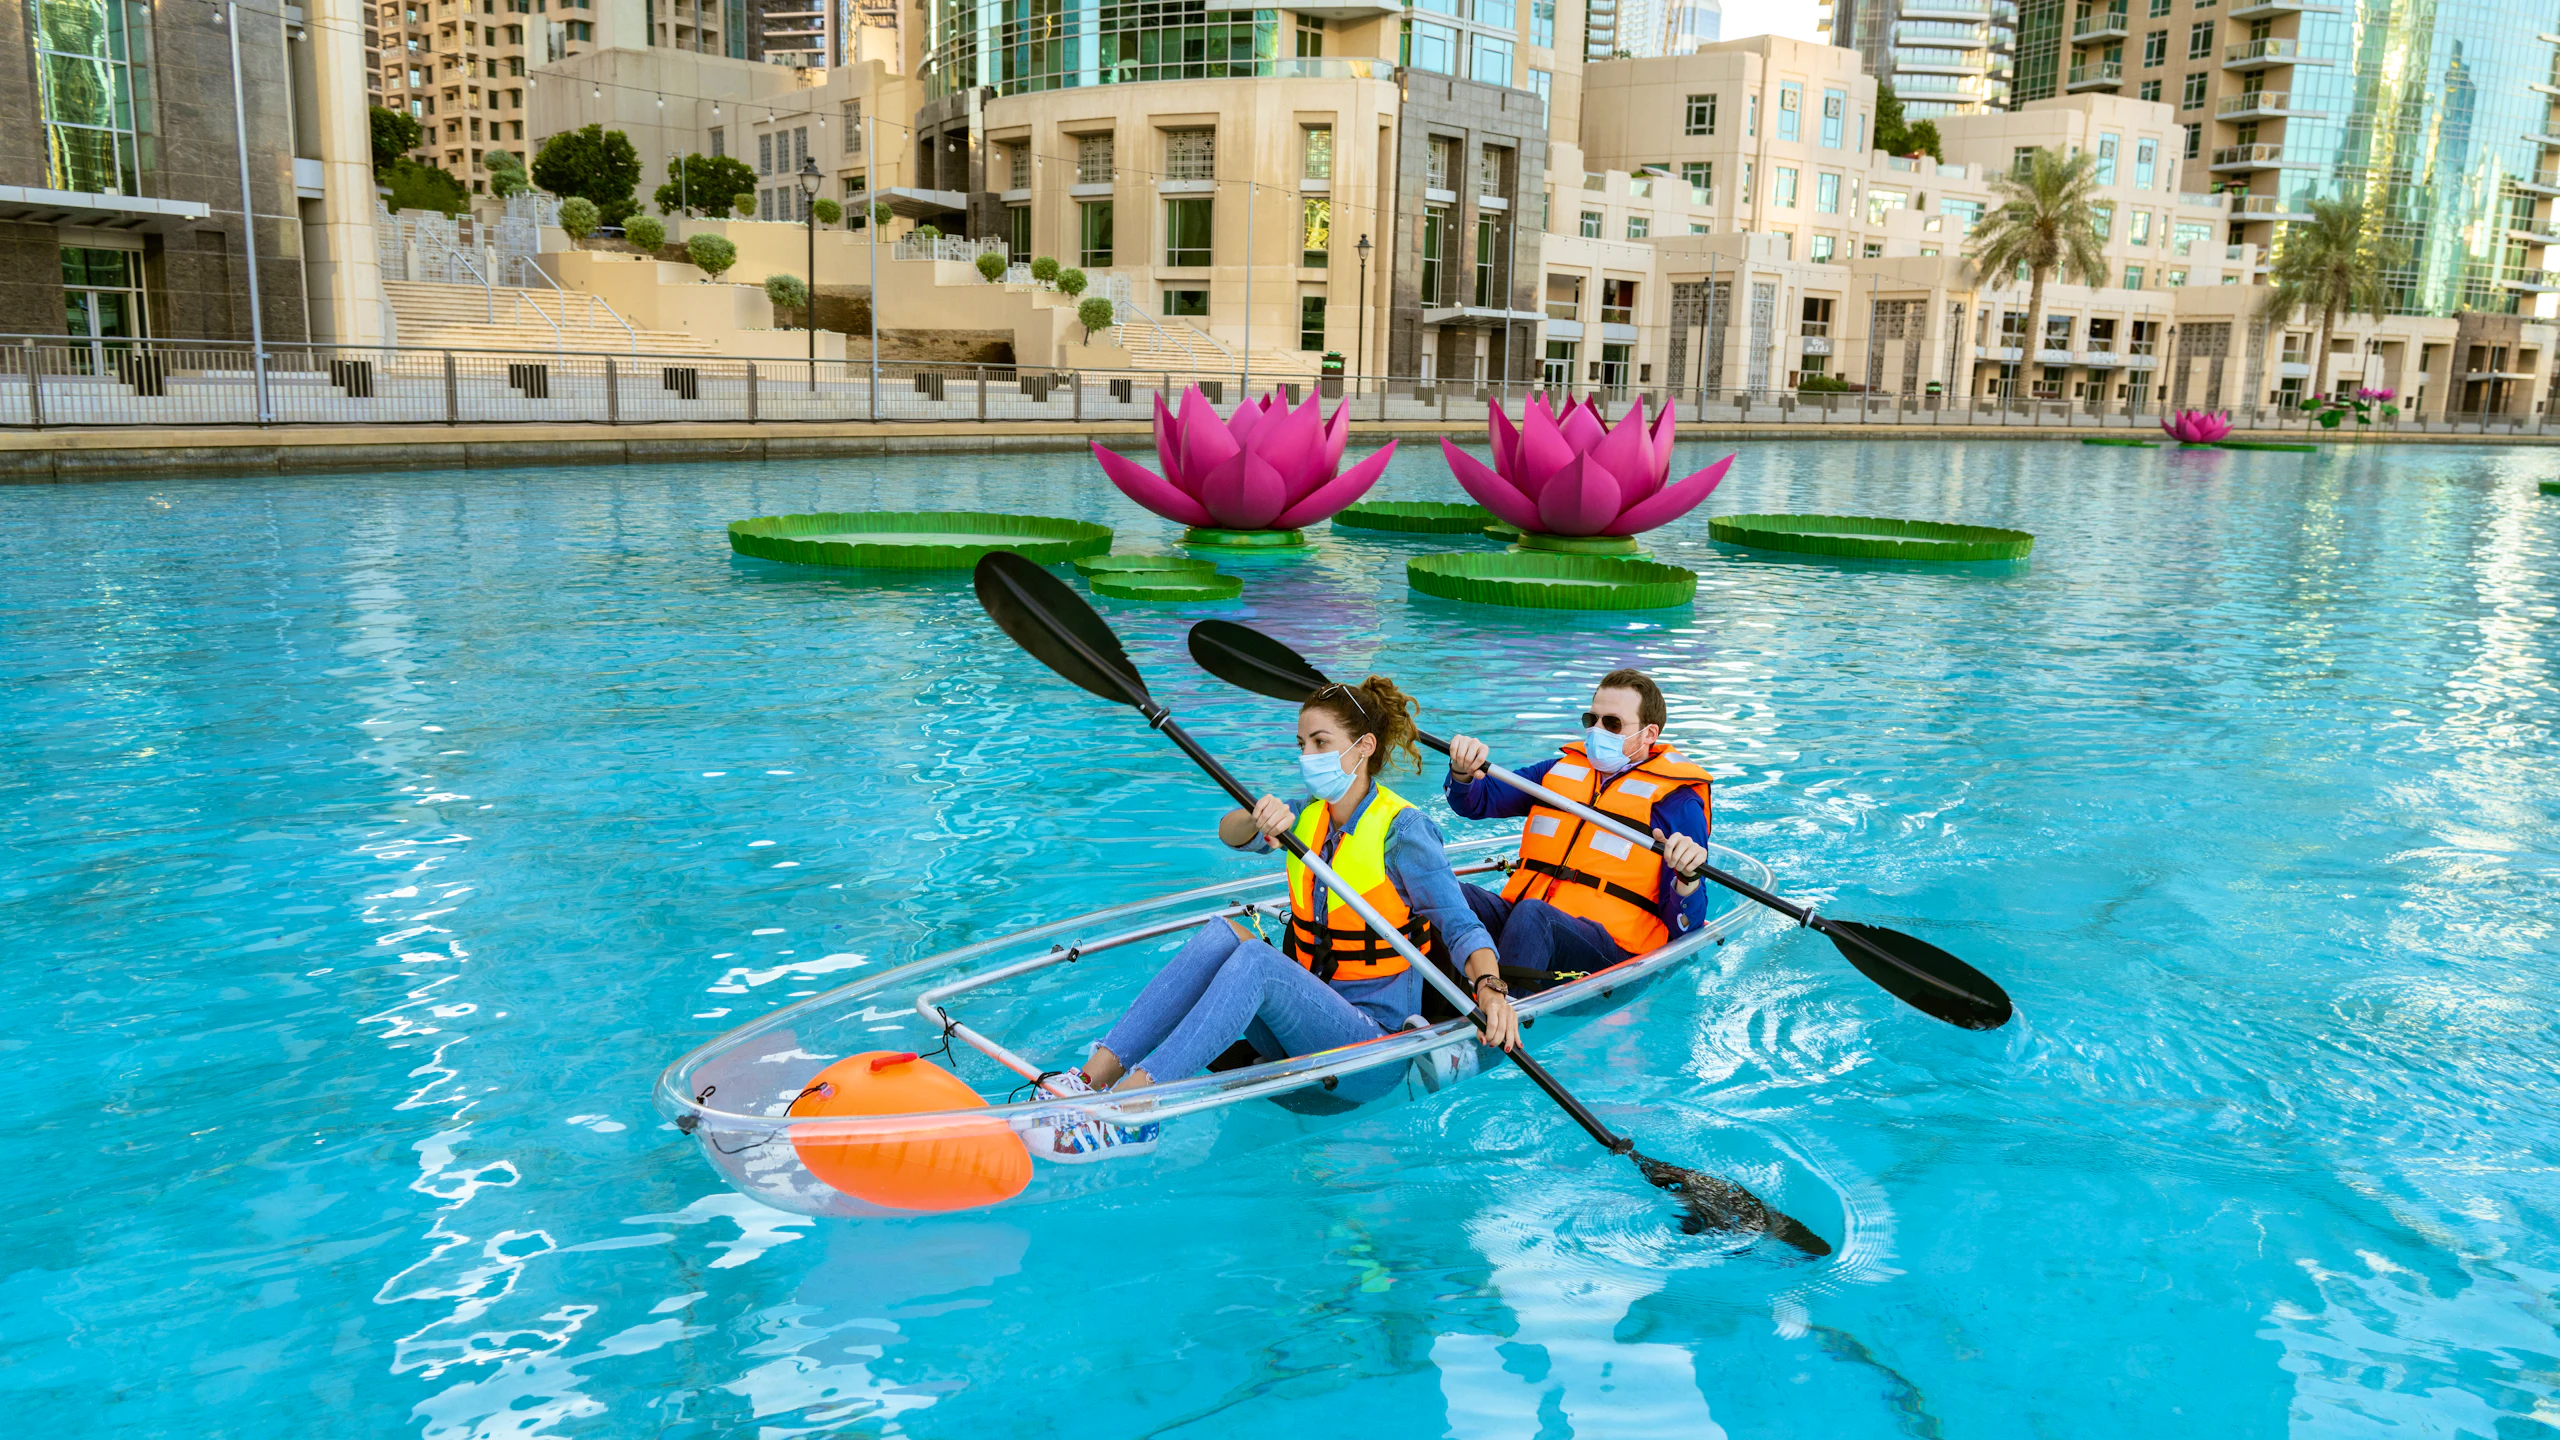 Dubai Fountain Kayaking Adventure Location